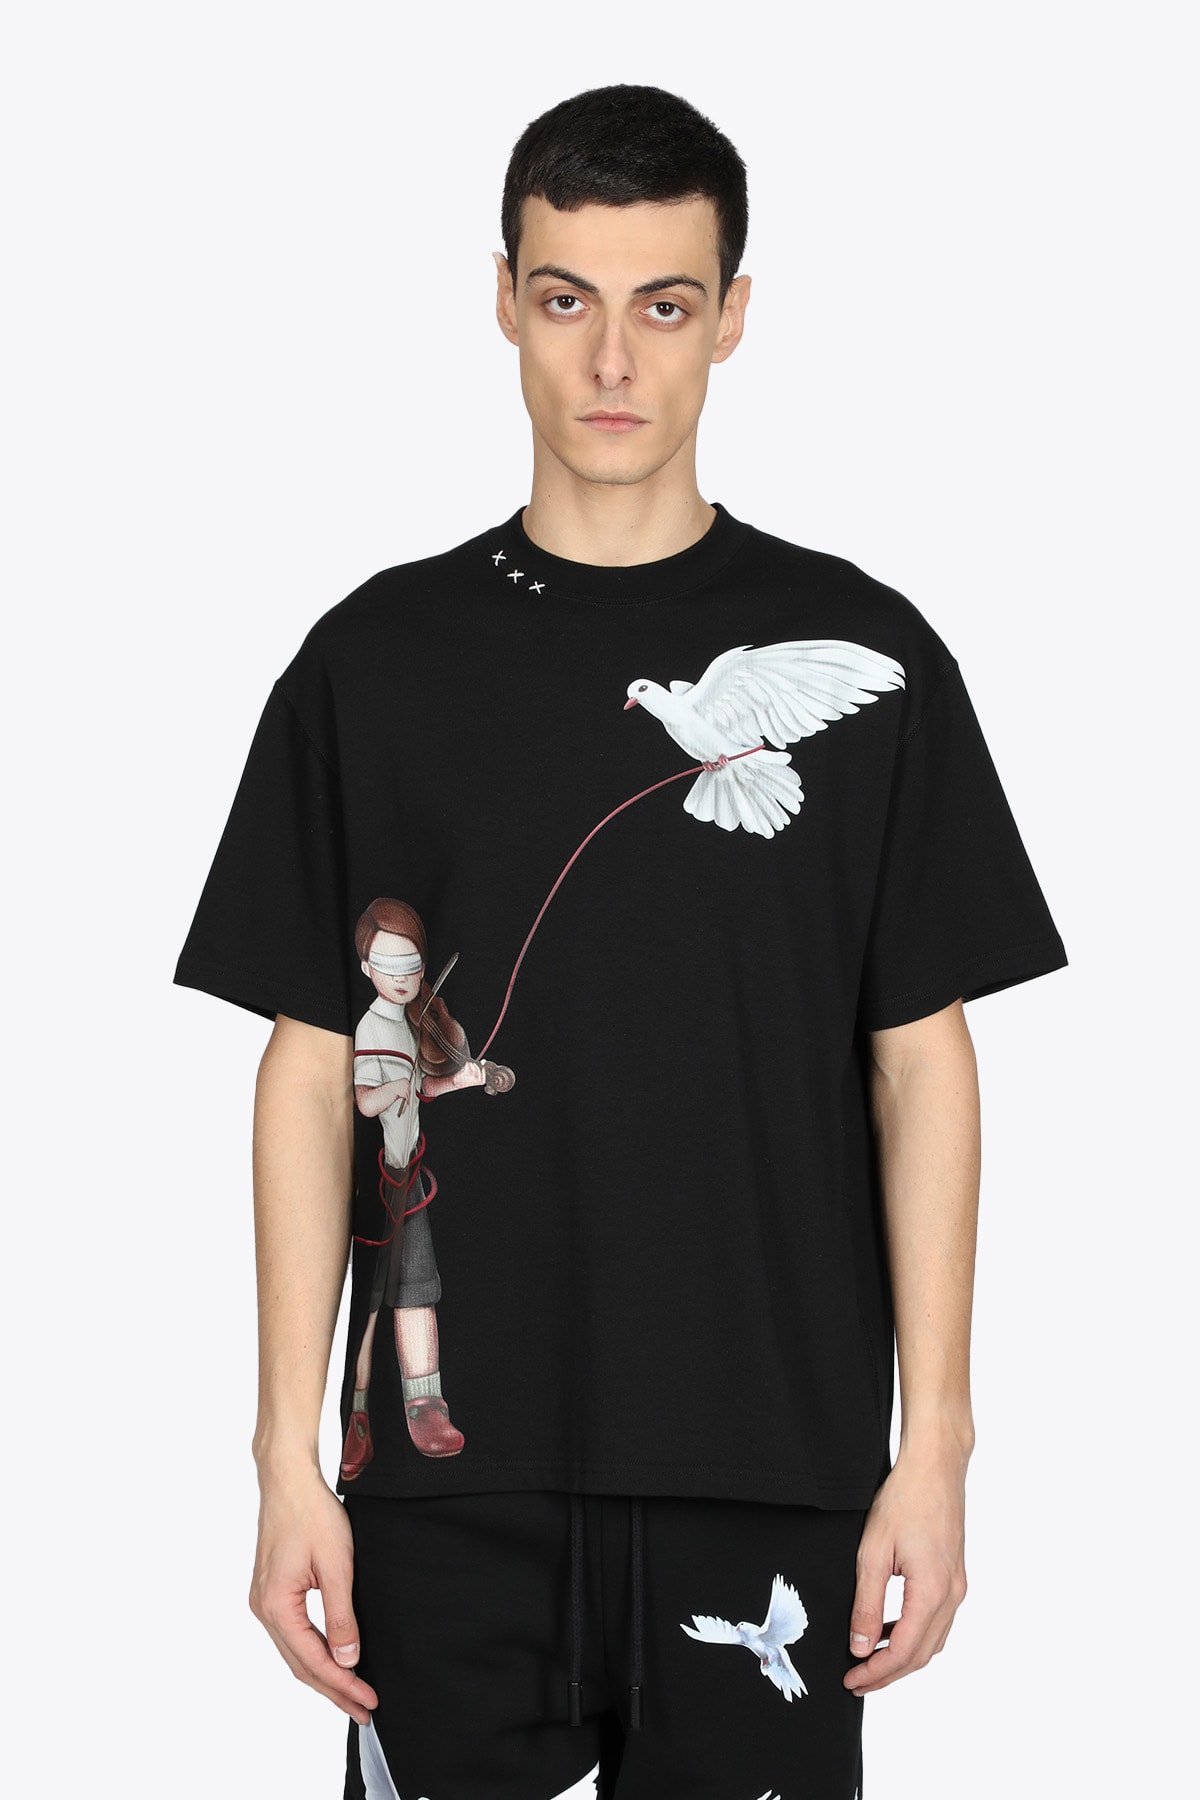 3.Paradis Violin T-shirt Black cotton t-shirt with violin and birds - Violin t-shirt